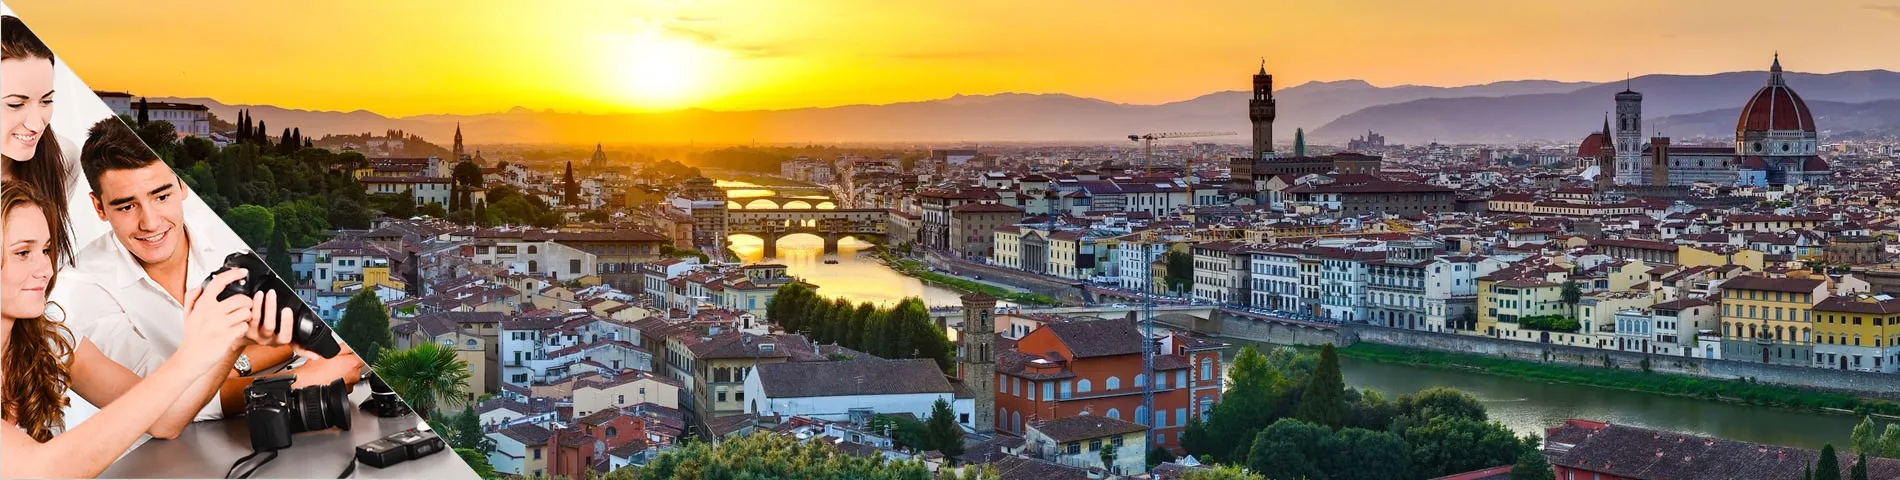 Флоренция - Итальянский и фотография